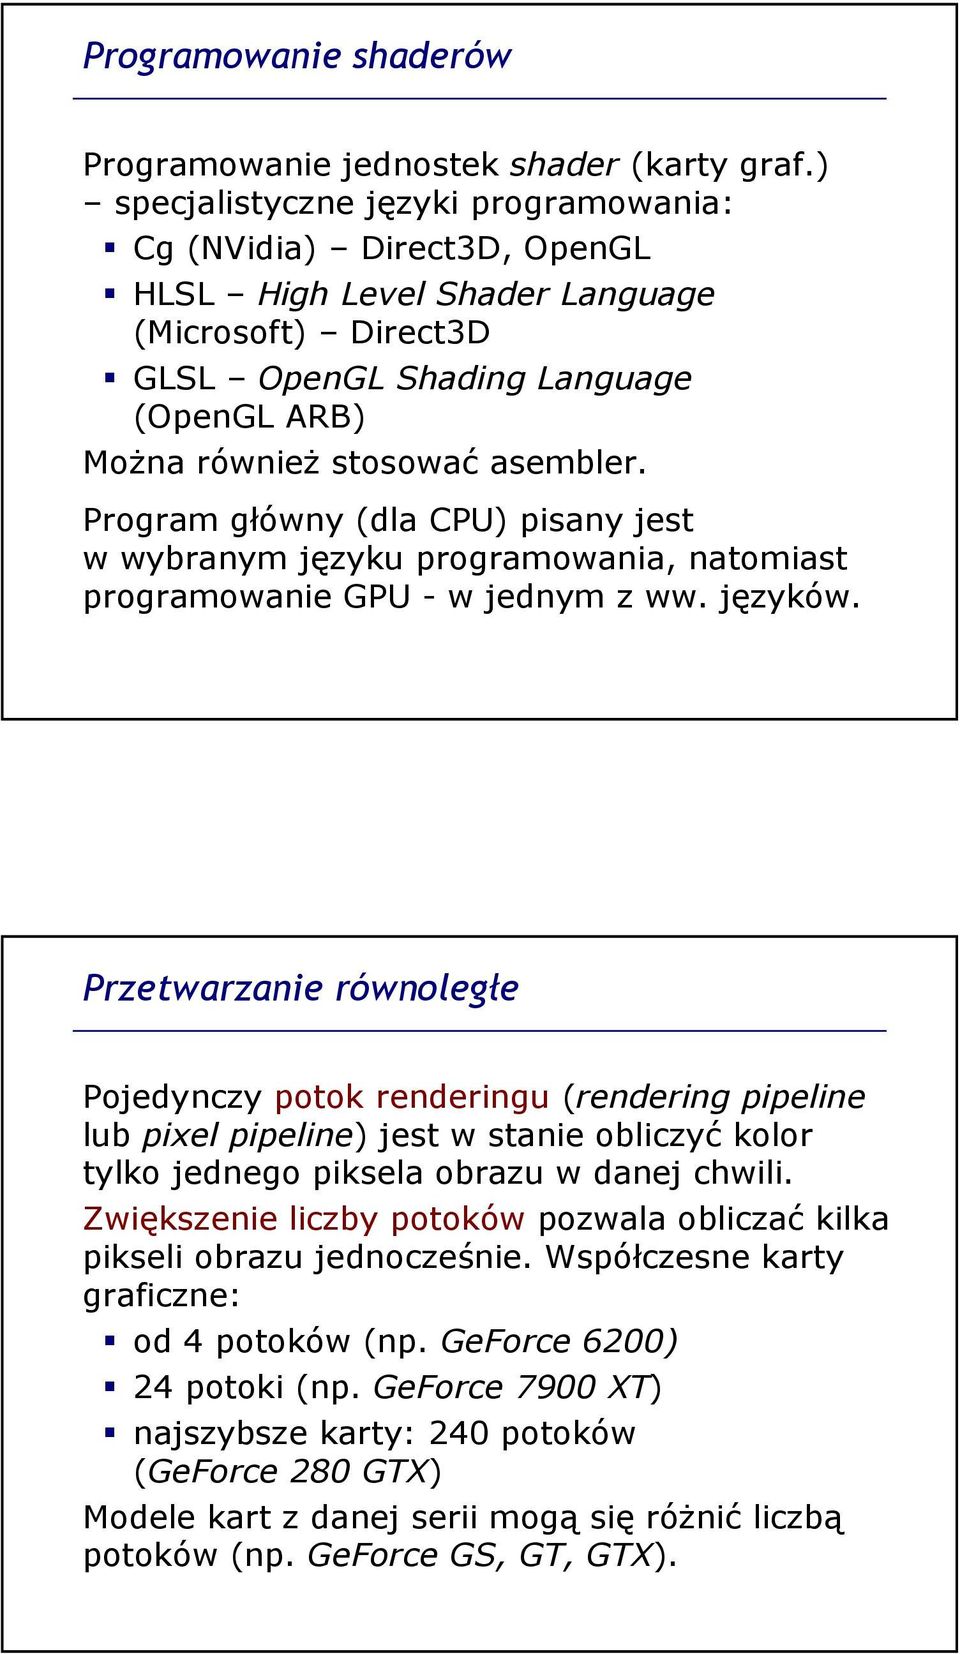 Program główny (dla CPU) pisany jest w wybranym języku programowania, natomiast programowanie GPU - w jednym z ww. języków.